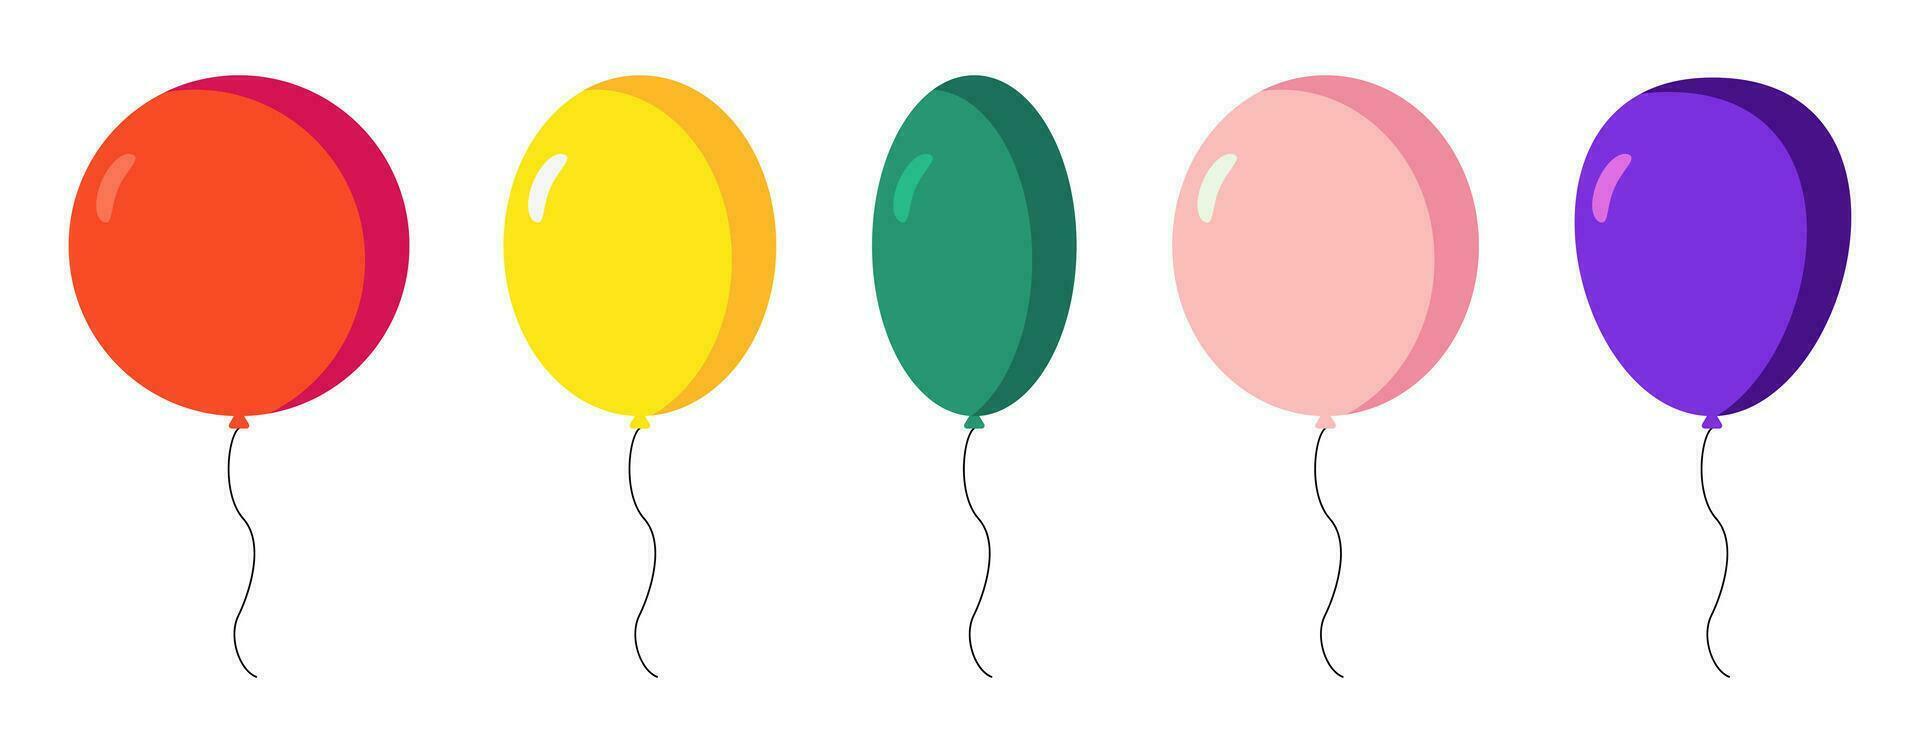 samling av ballong ikoner, födelsedag och fest prydnad mönster. röd, gul, grön, rosa och blå ballonger. vektor isolerat på vit bakgrund